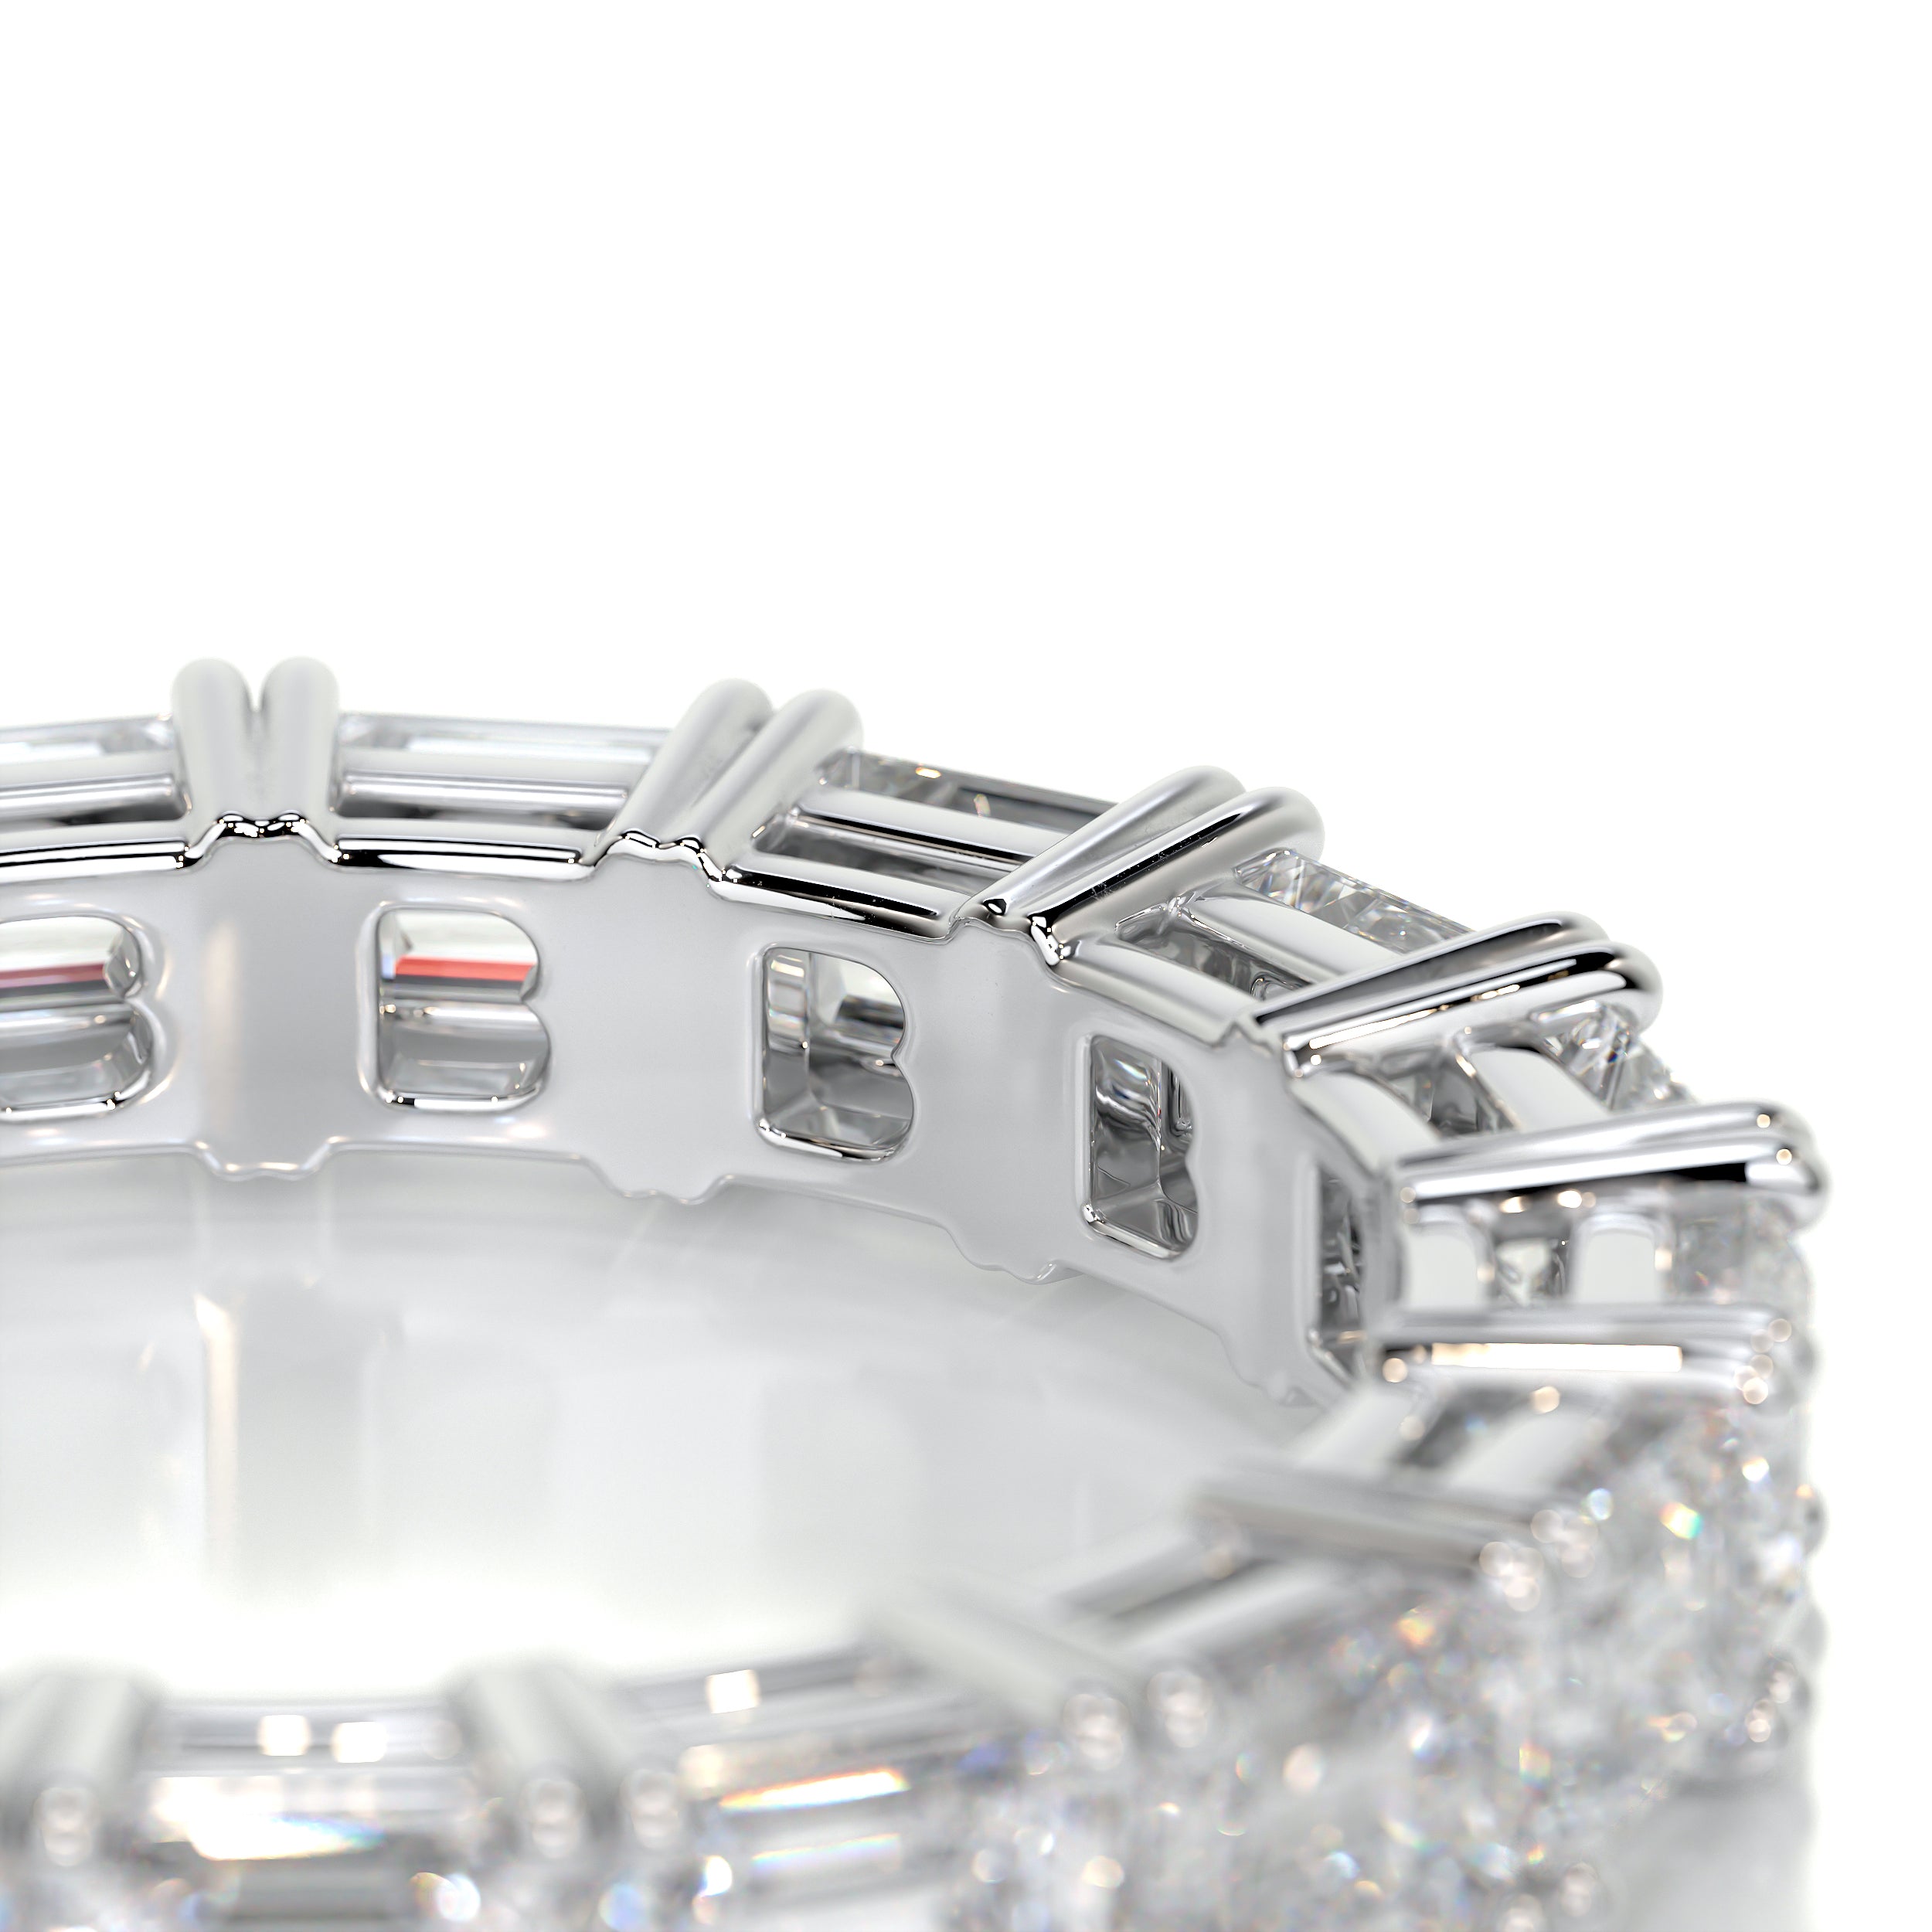 Vicky Diamond Wedding Ring -18K White Gold